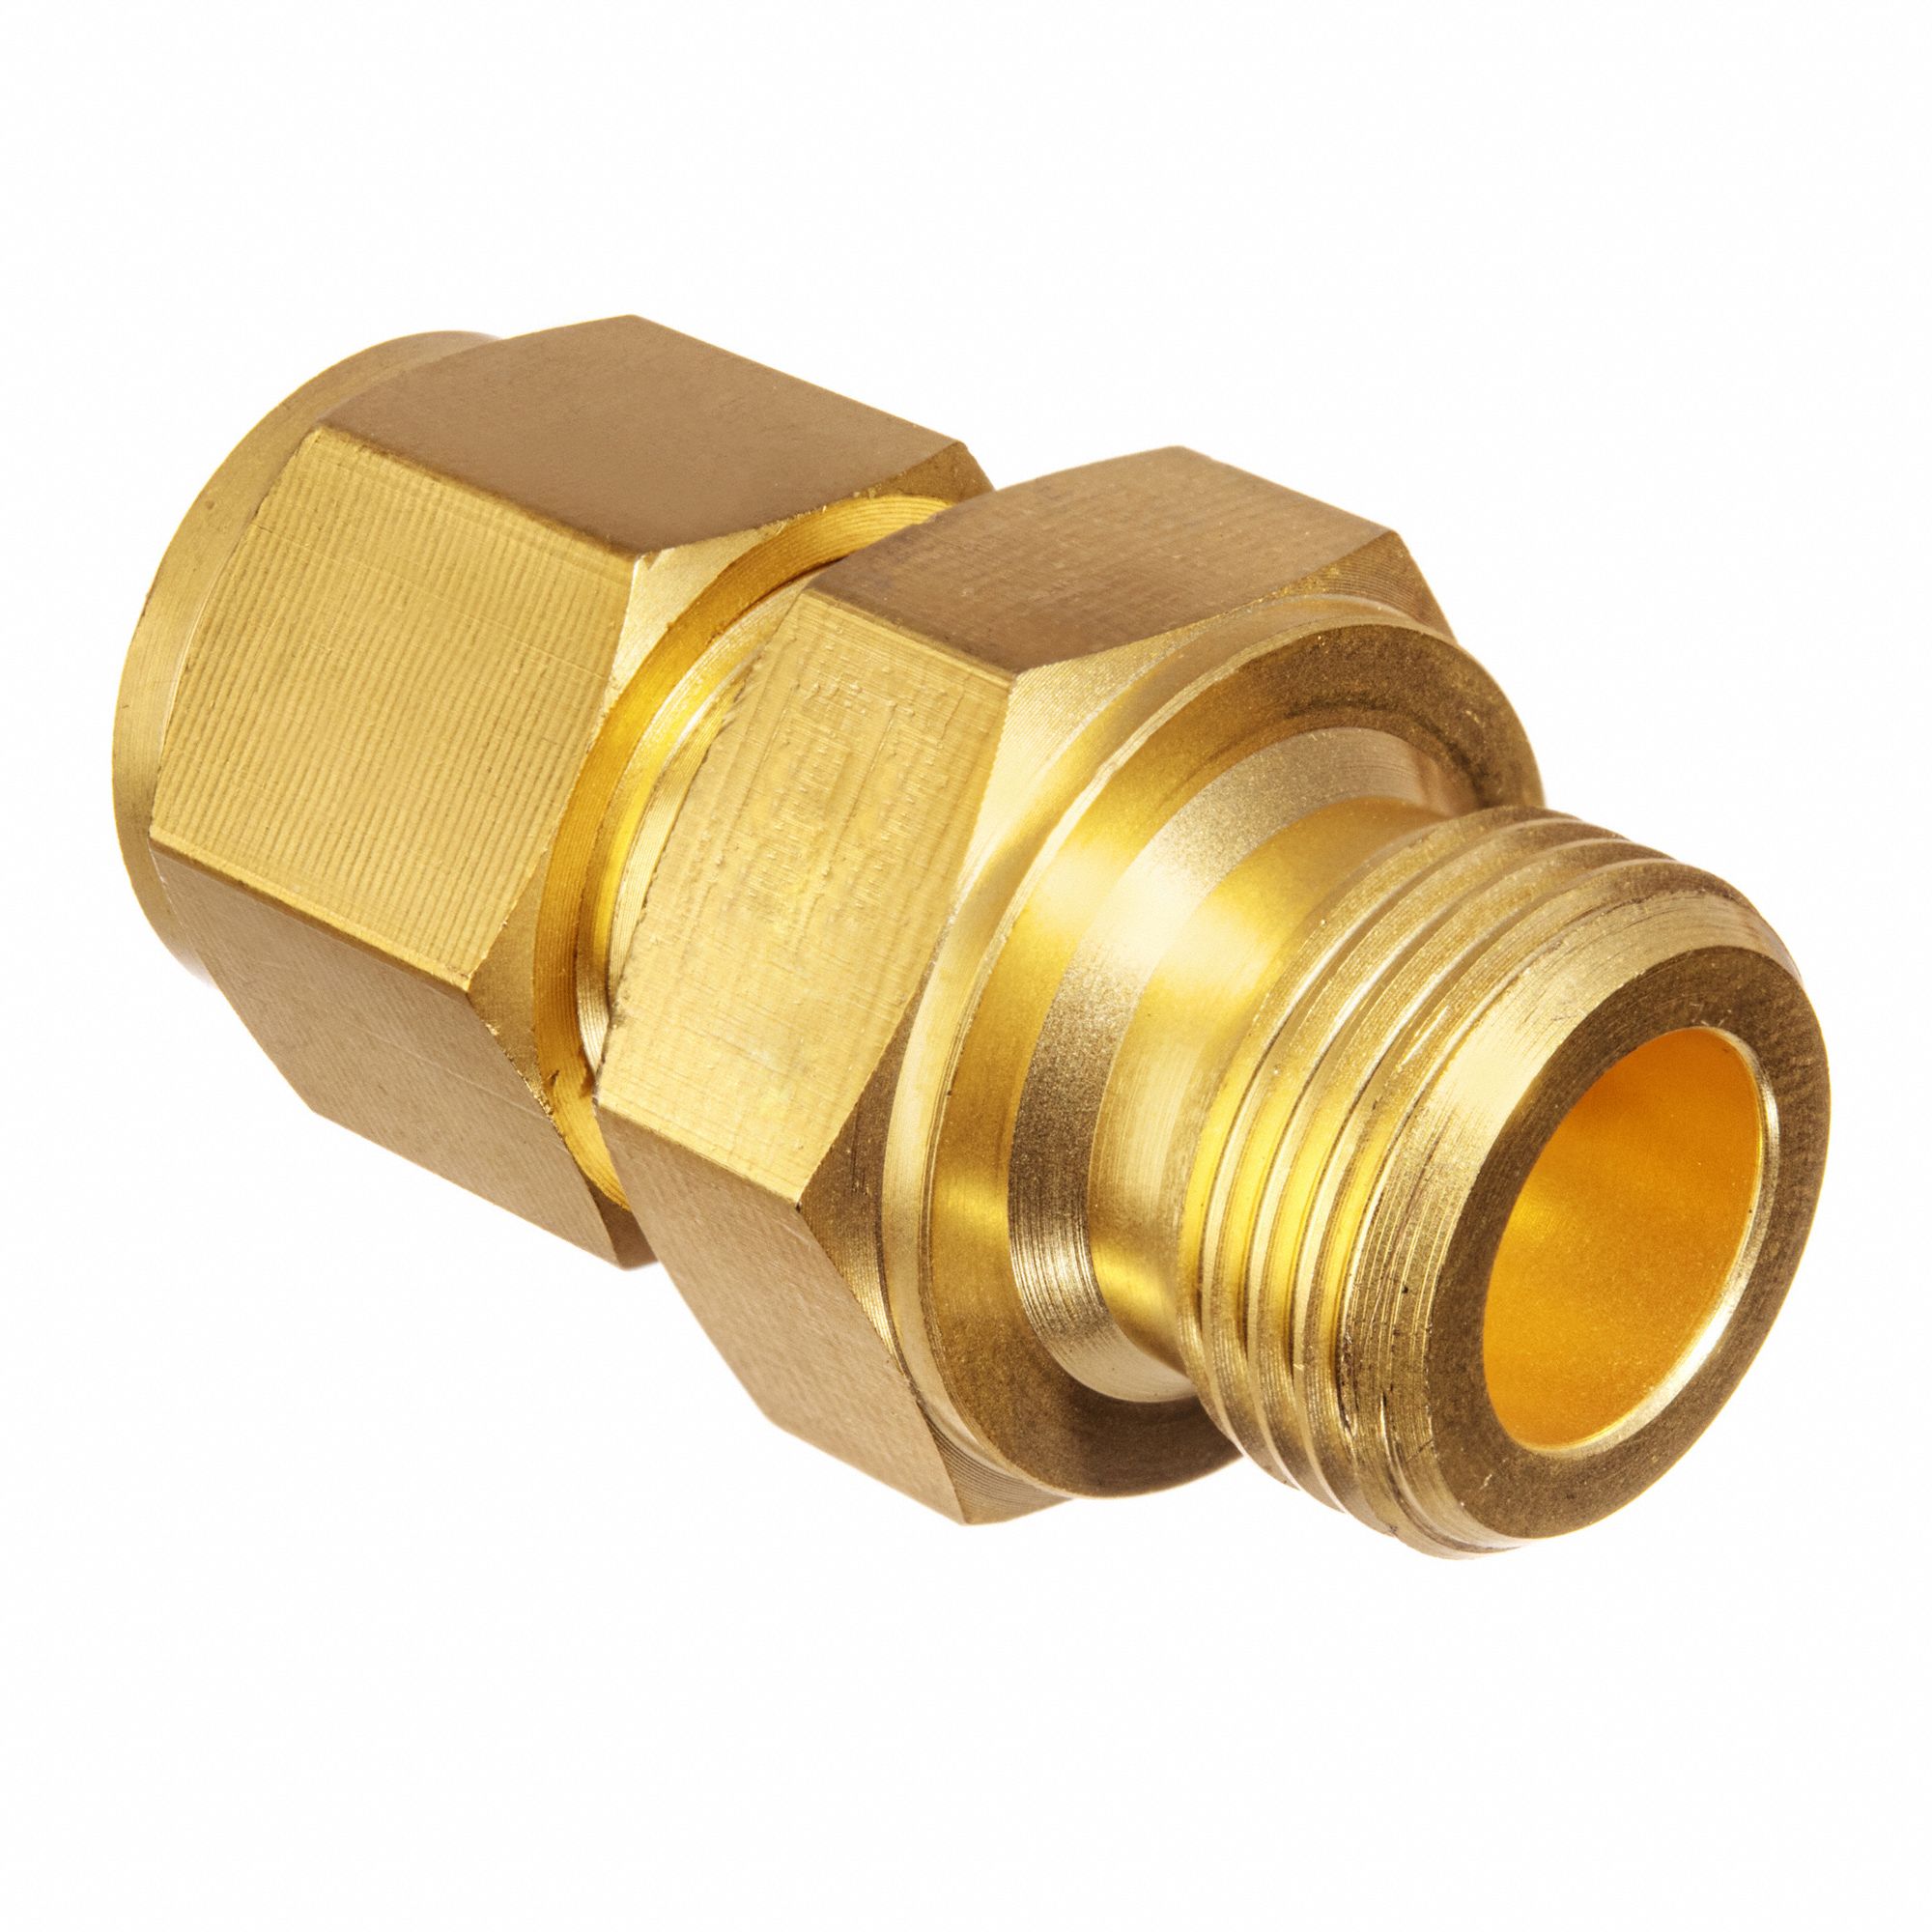 Brass Ferrule Fittings - Double Ferrule Compression